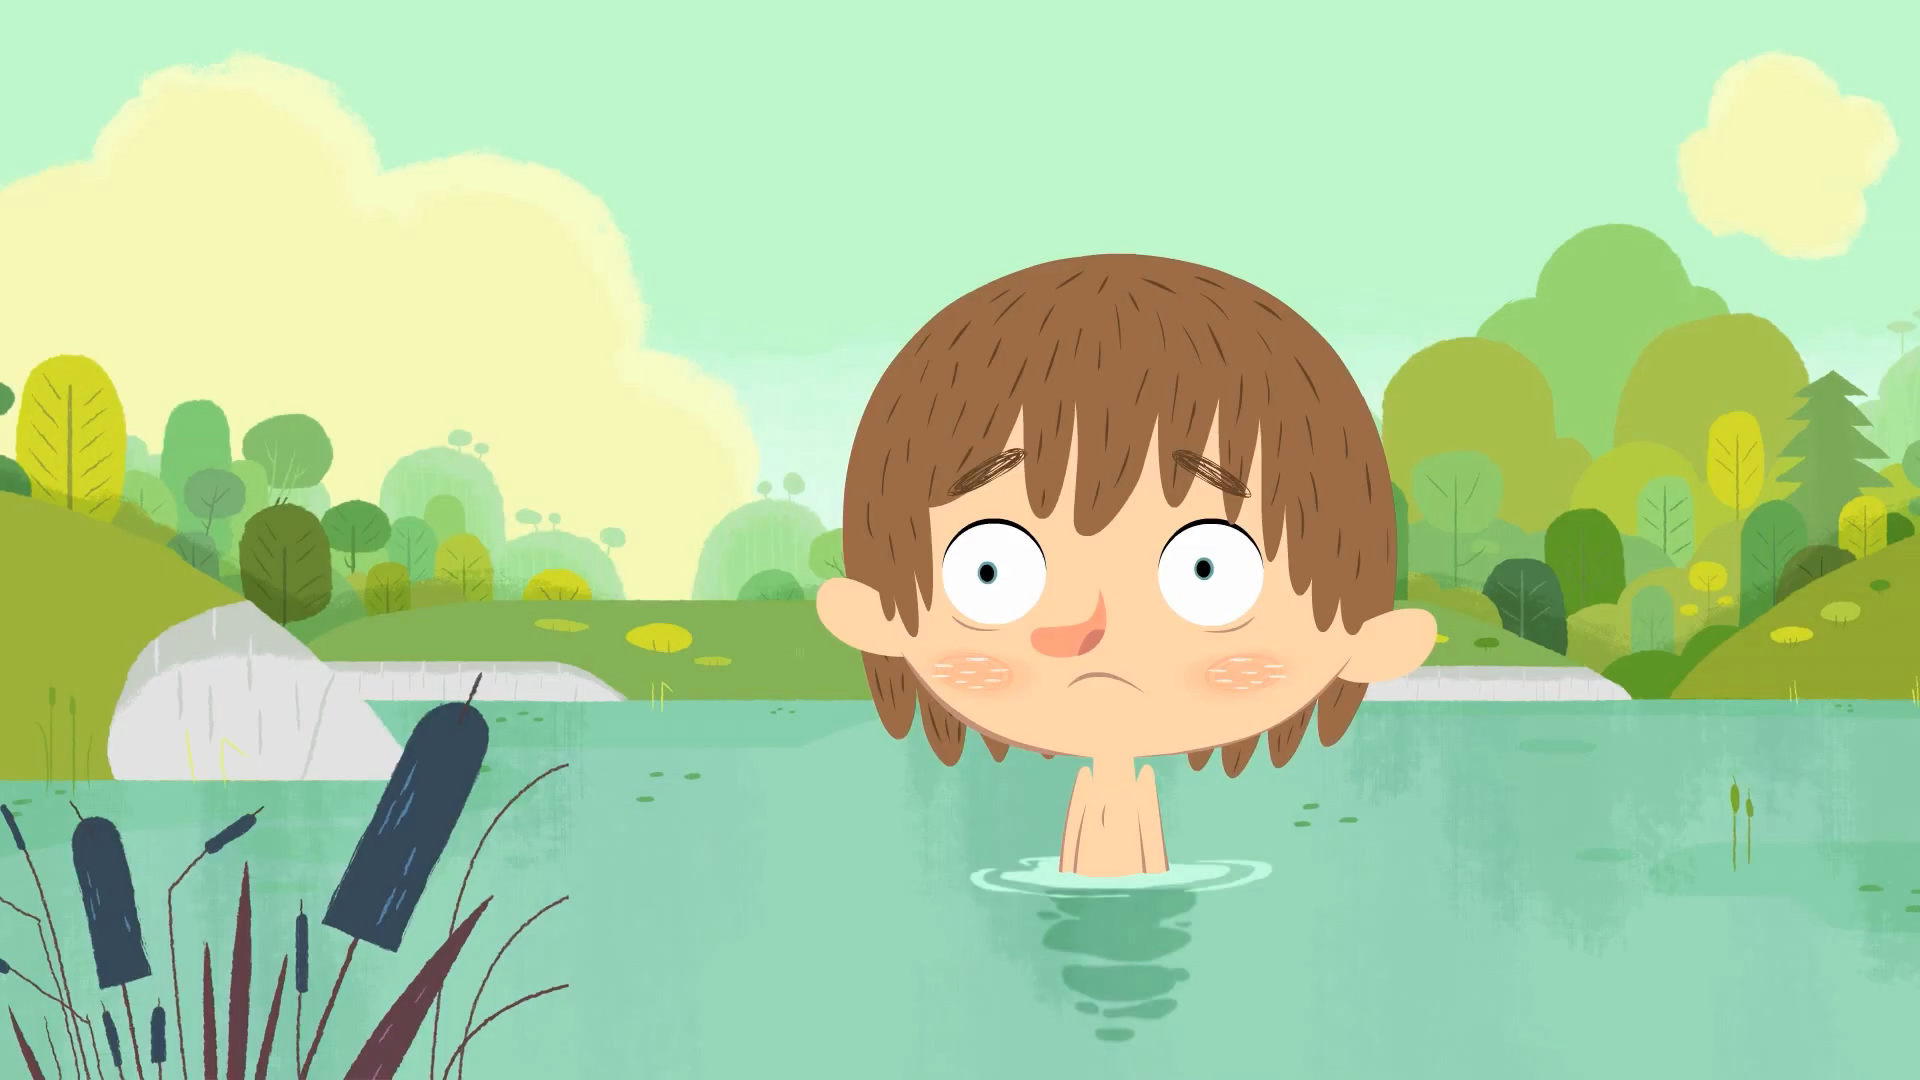 Shirtless Drawn Cartoon Boys: Shirtless Matt & Malik in the Lake